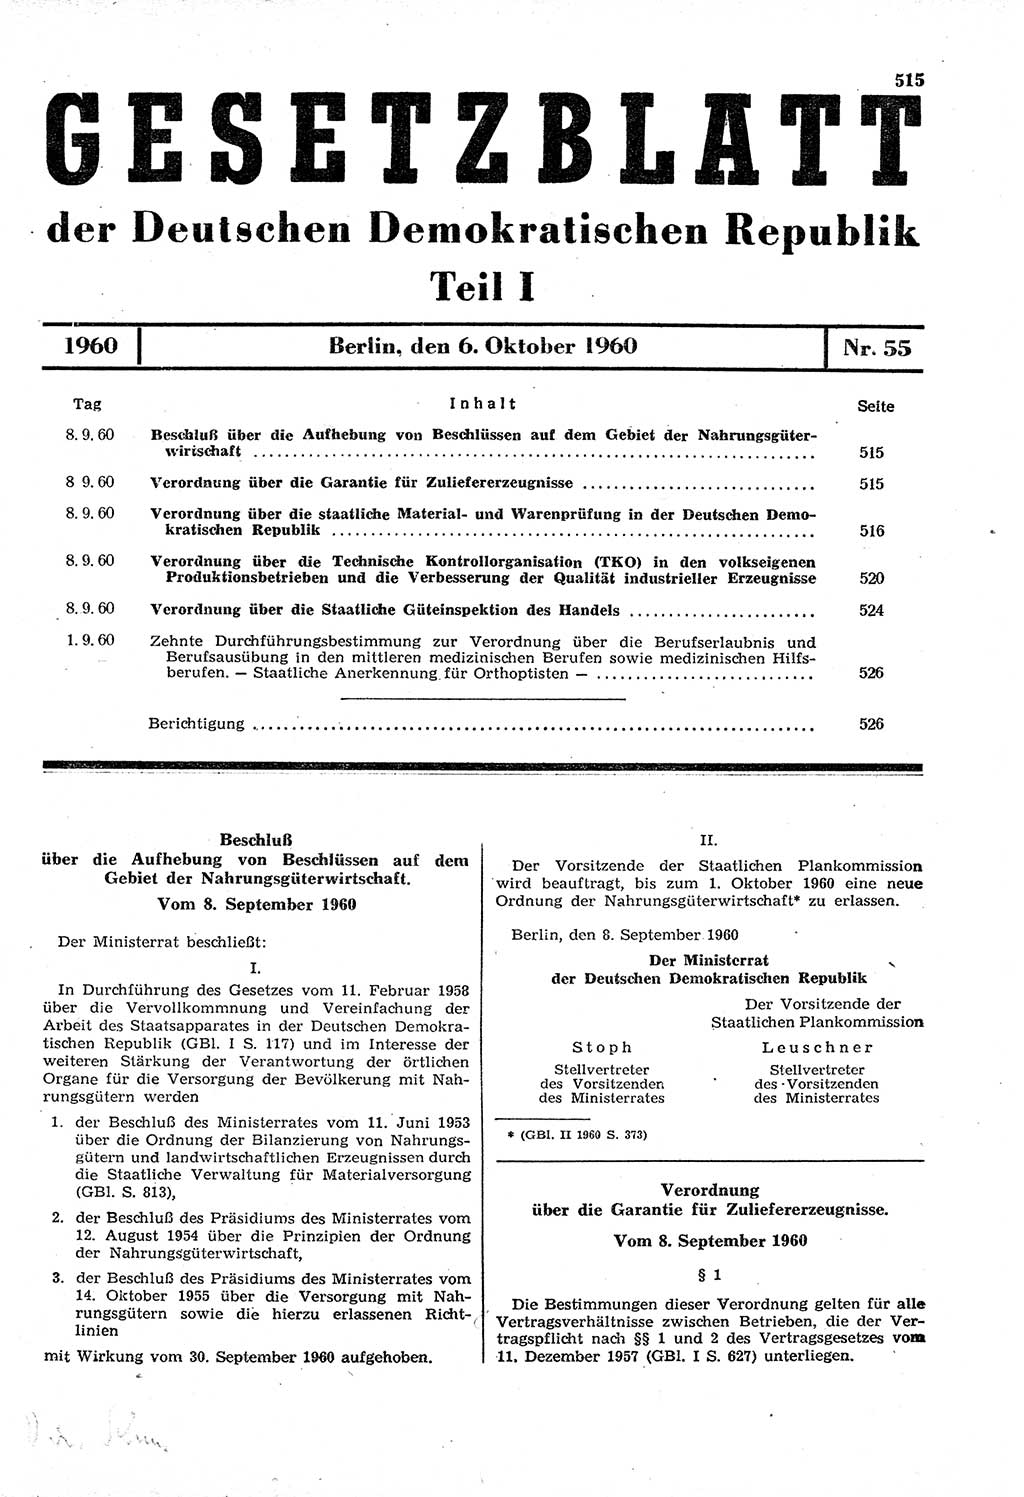 Gesetzblatt (GBl.) der Deutschen Demokratischen Republik (DDR) Teil Ⅰ 1960, Seite 515 (GBl. DDR Ⅰ 1960, S. 515)